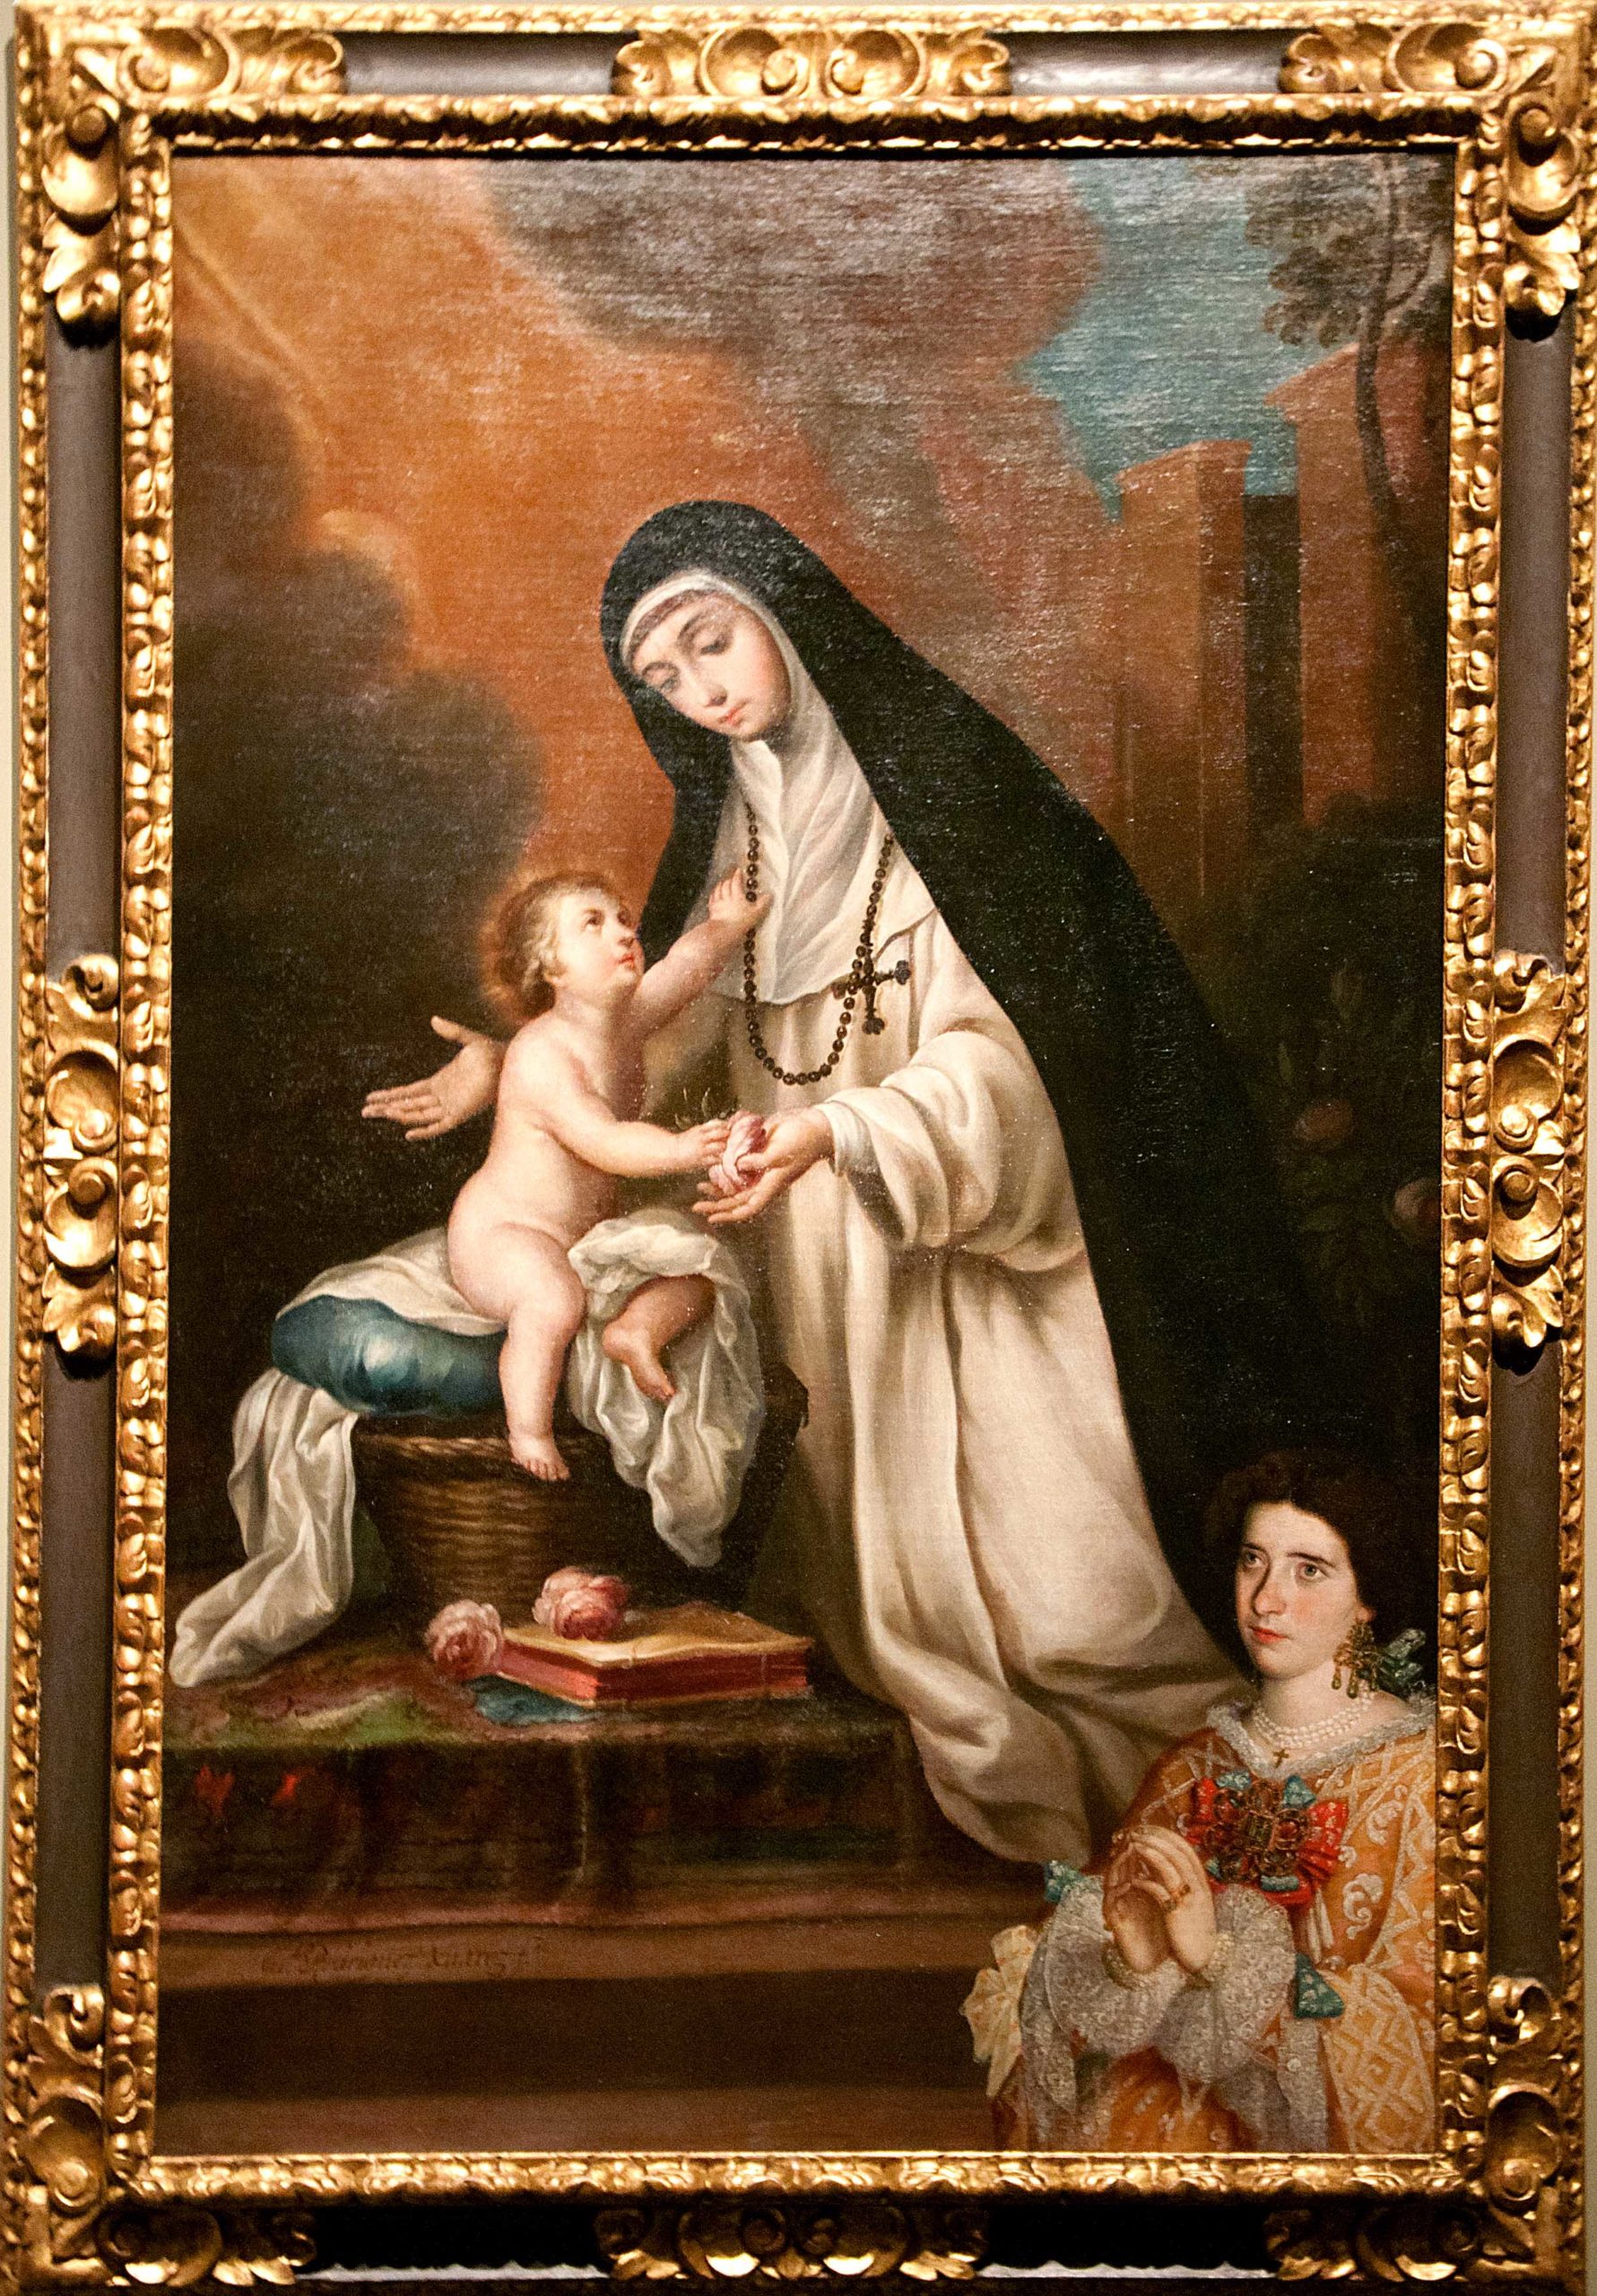 Juan Rodríguez Juárez, St. Rose of Lima with Christ Child and Donor, c. 1720, oil on canvas, 167.6 x 106.6 cm (Denver Art Museum)